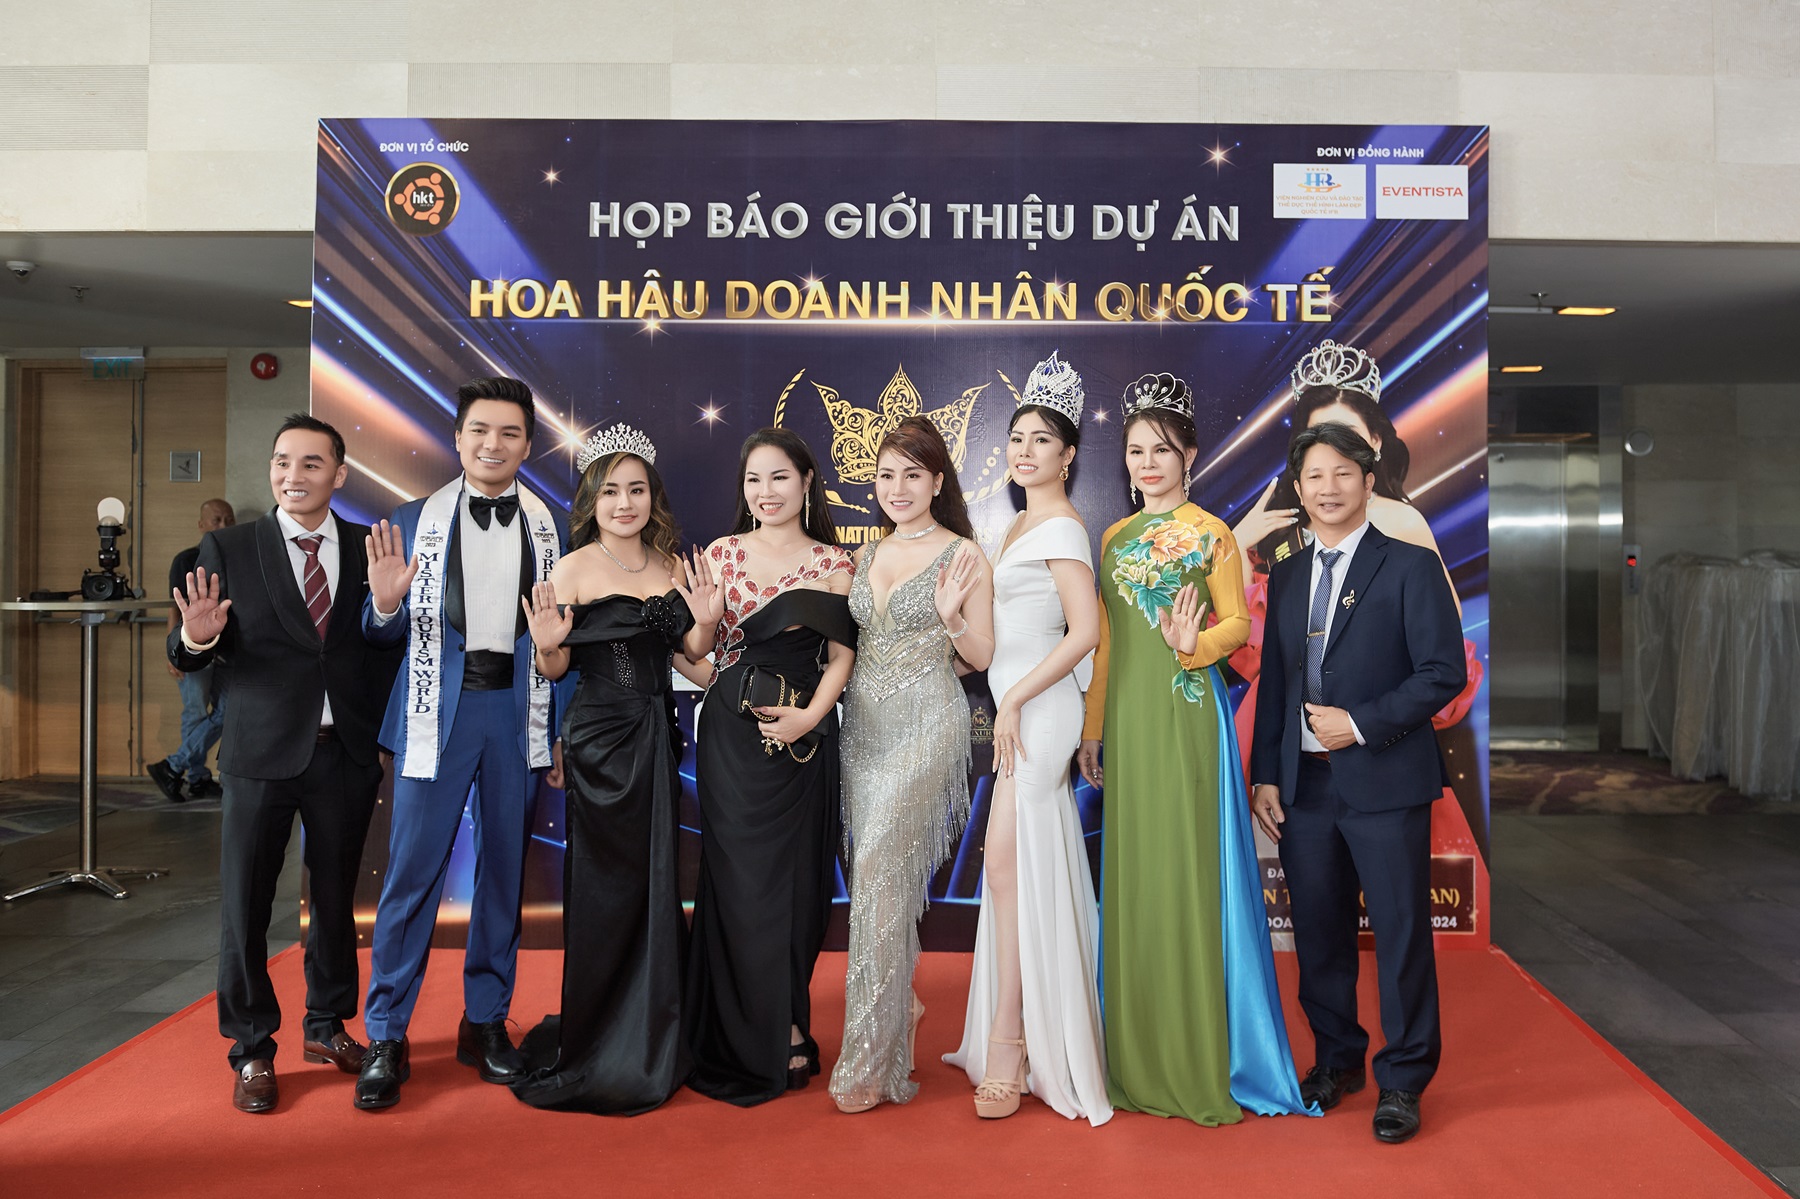 Hoa hậu Nga 2017 gây ấn tượng khi mặc áo dài truyền thống, lựa chọn Hoa hậu Doanh nhân quốc tế - ảnh 4